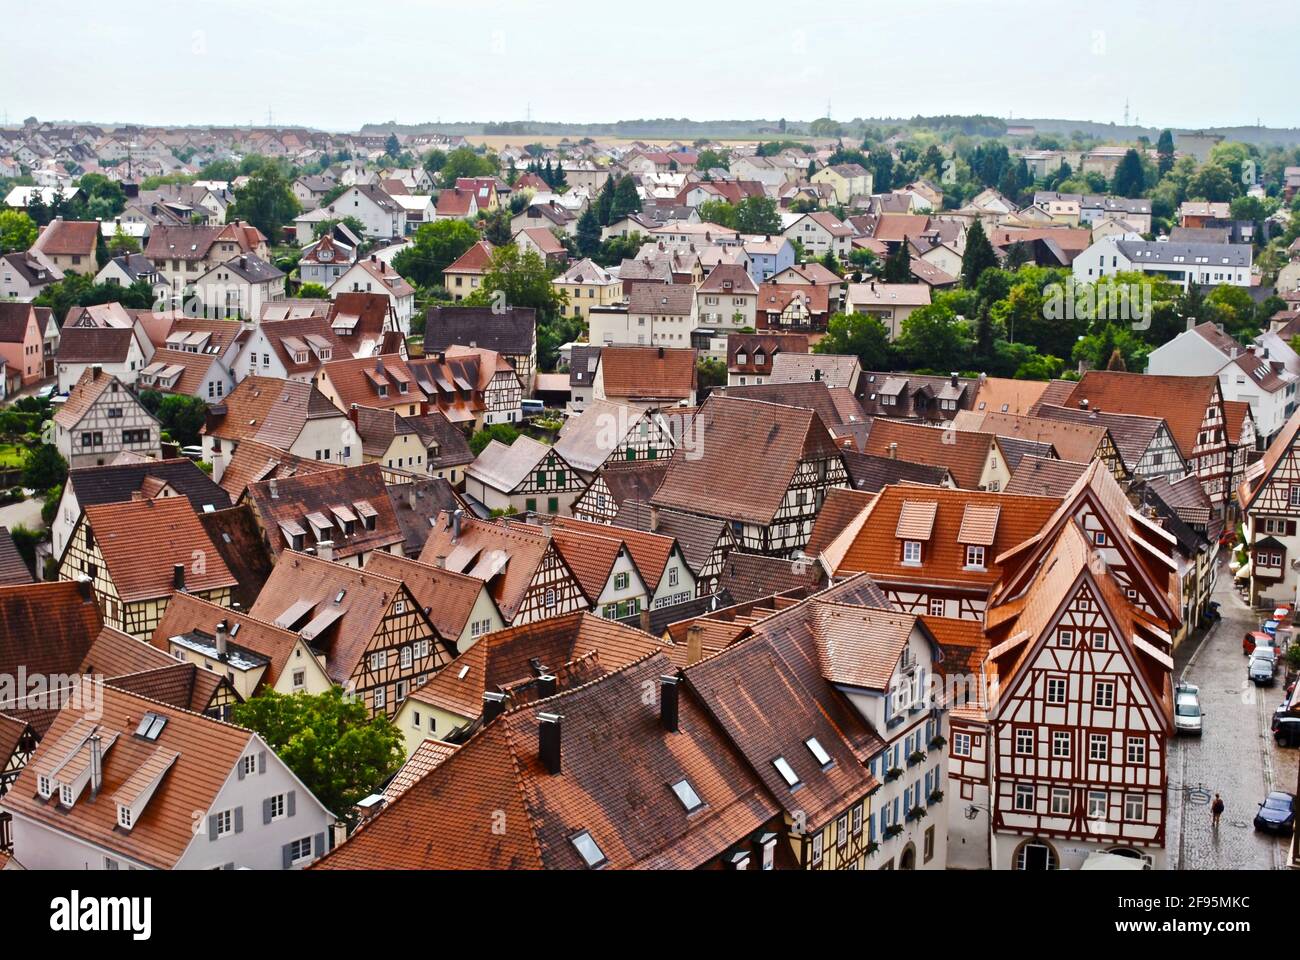 Casas de entramado de madera de techo rojo alemán tradicional vistas desde la Torre Azul (Blauer Turm) en Bad Wimpfen, Alemania en el distrito de Heilbronn. Foto de stock